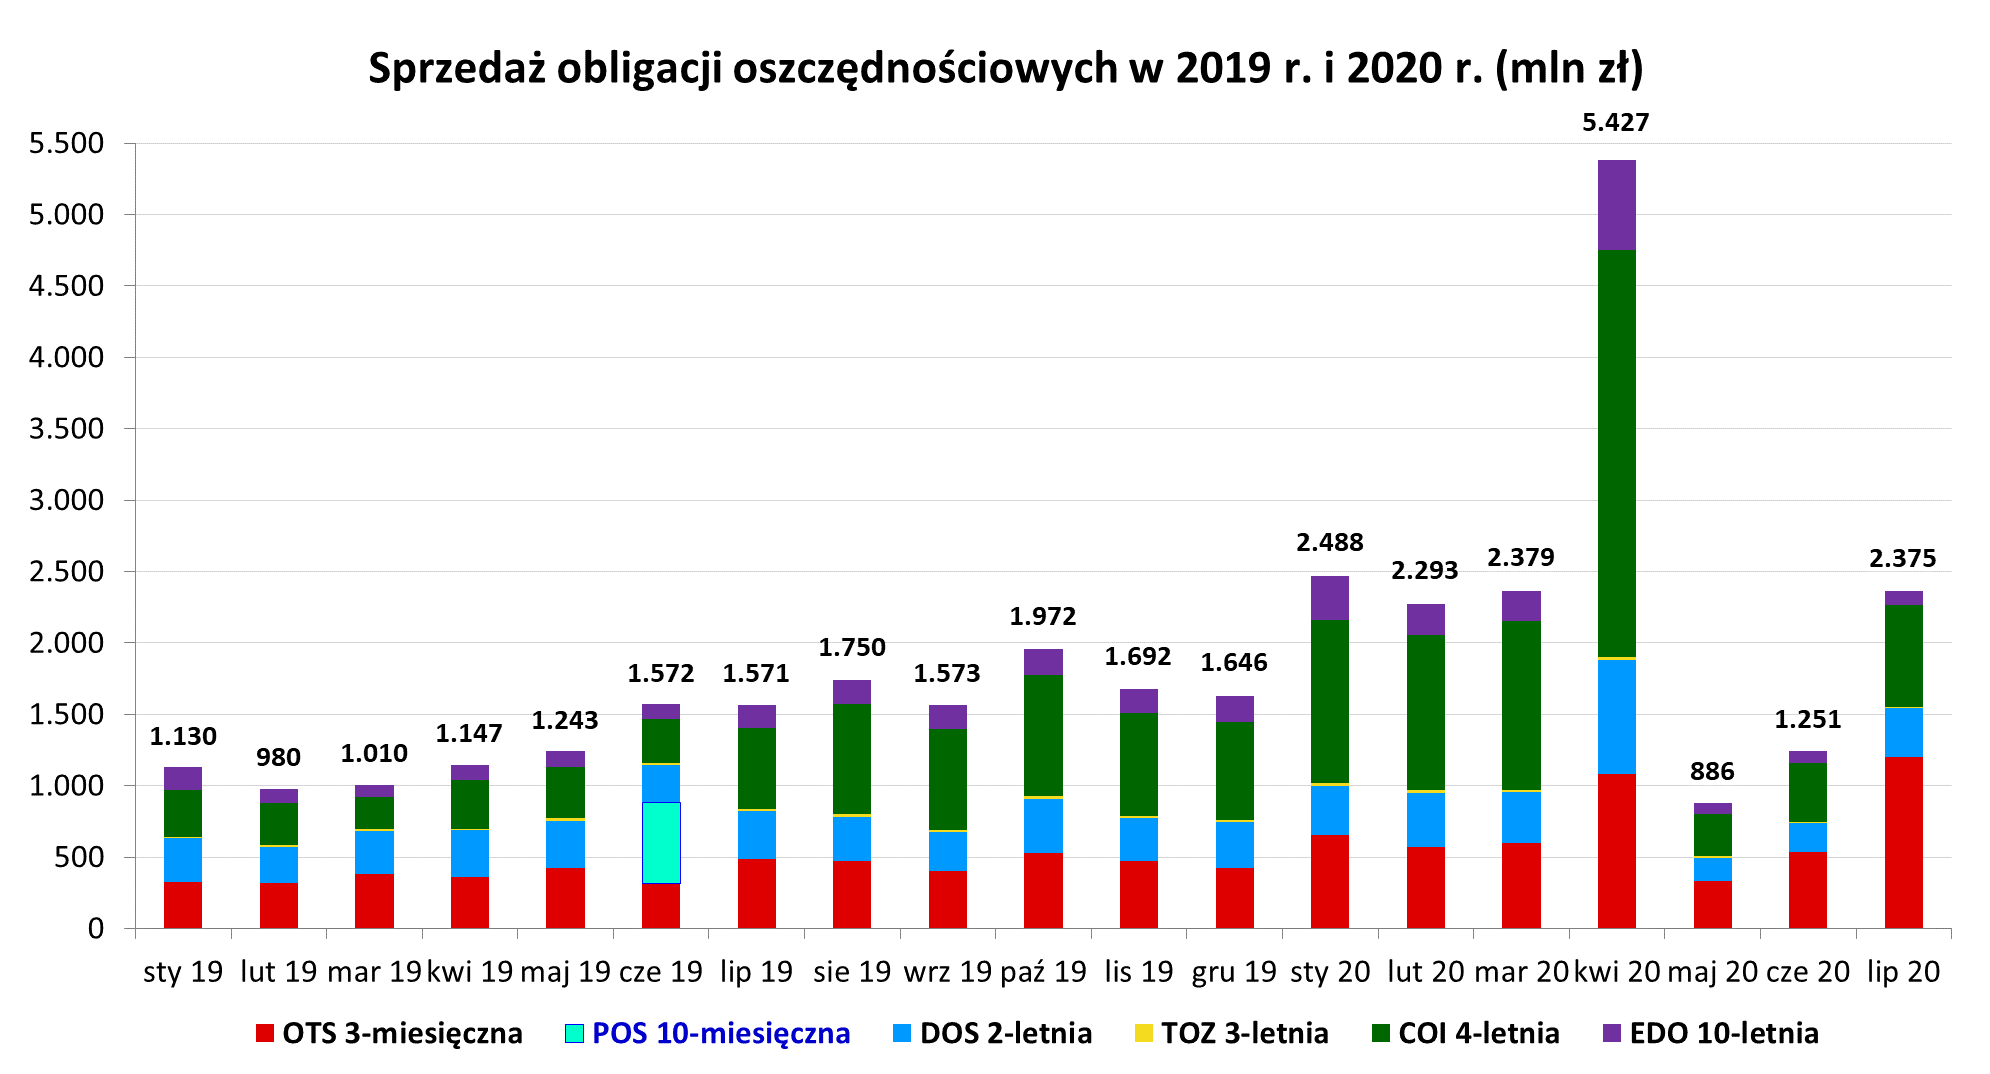 Wykres słupkowy przedstawiający sprzedaż obligacji oszczędnościowych w 2018 r. i 2019 r. w mln (lipiec)